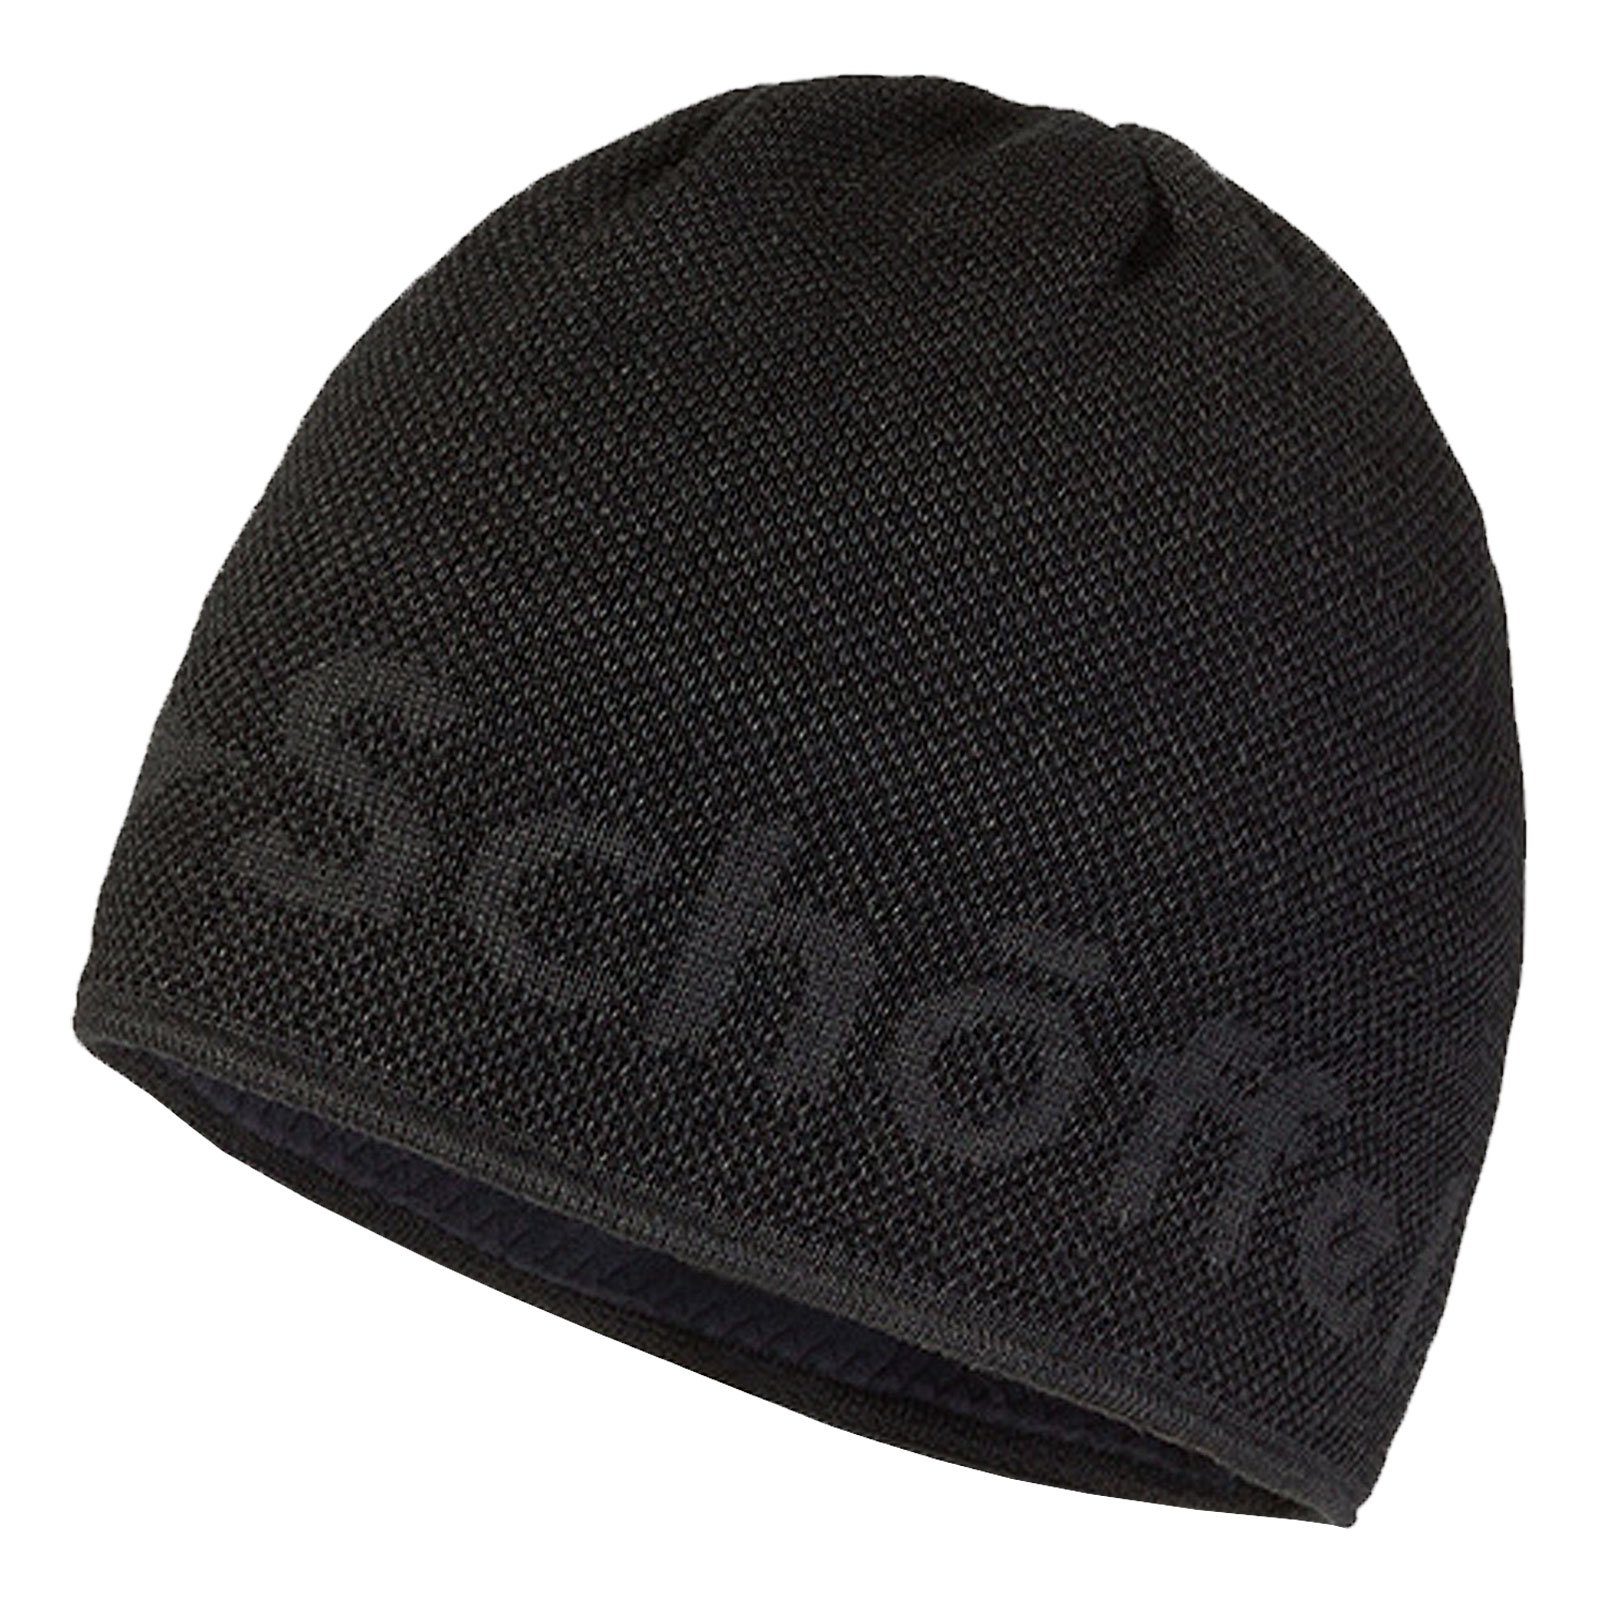 Schöffel Strickmütze Knitted Hat Klinovec mit eingestricktem Schöffel-Logo